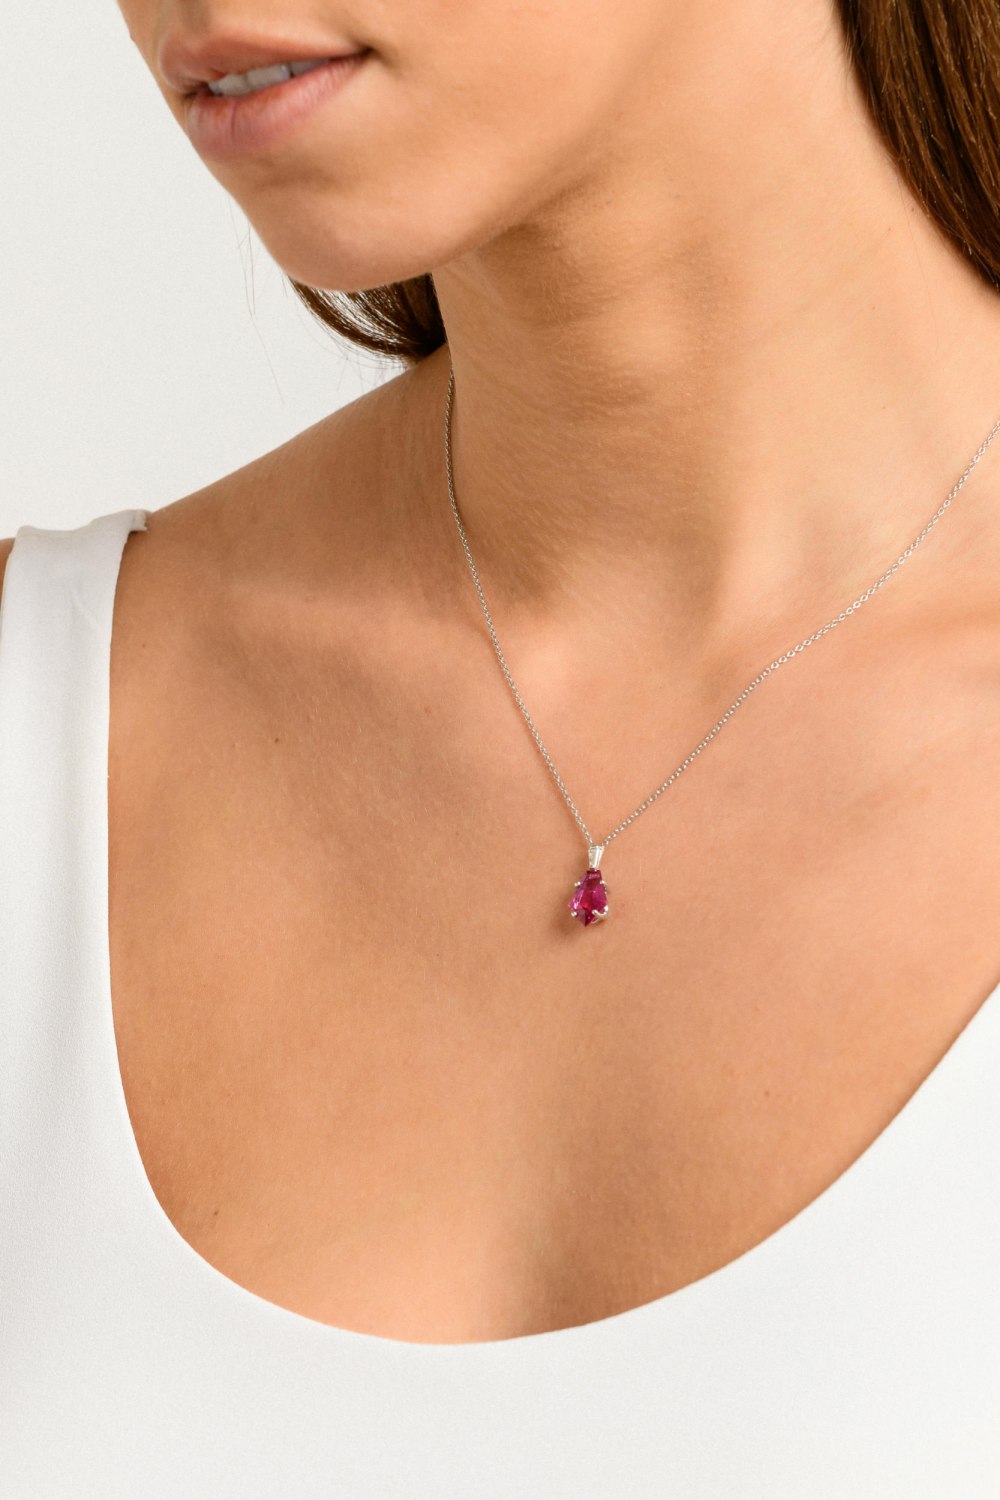 Kessaris-Ruby Diamond Necklace